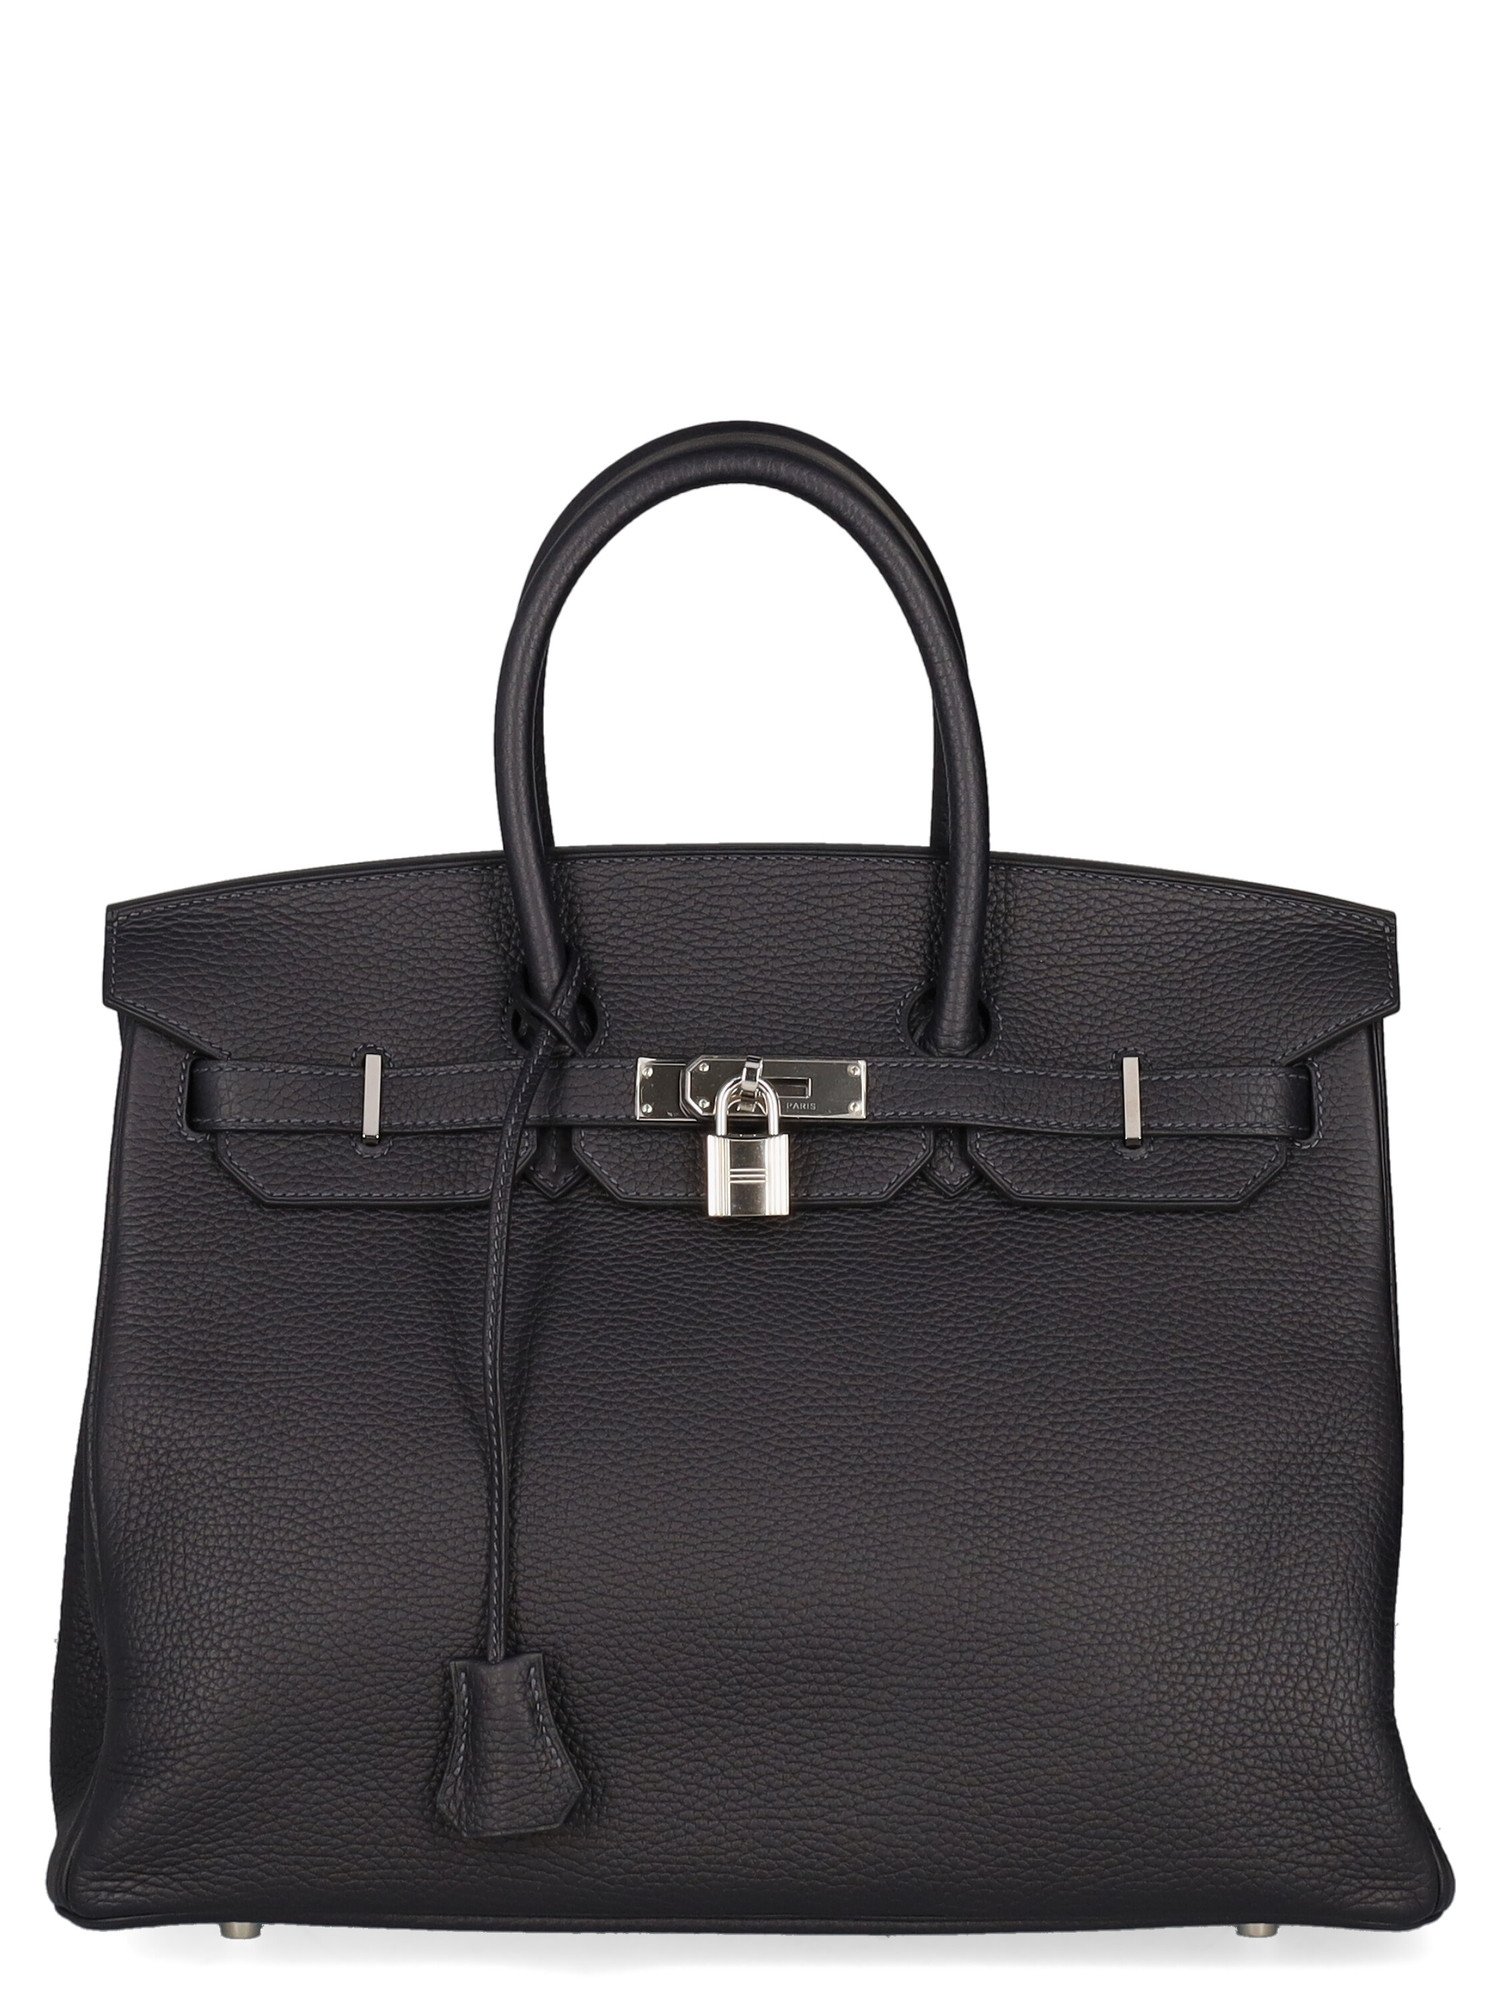 Hermes Women's Handbags - Hermès - In Navy Leather